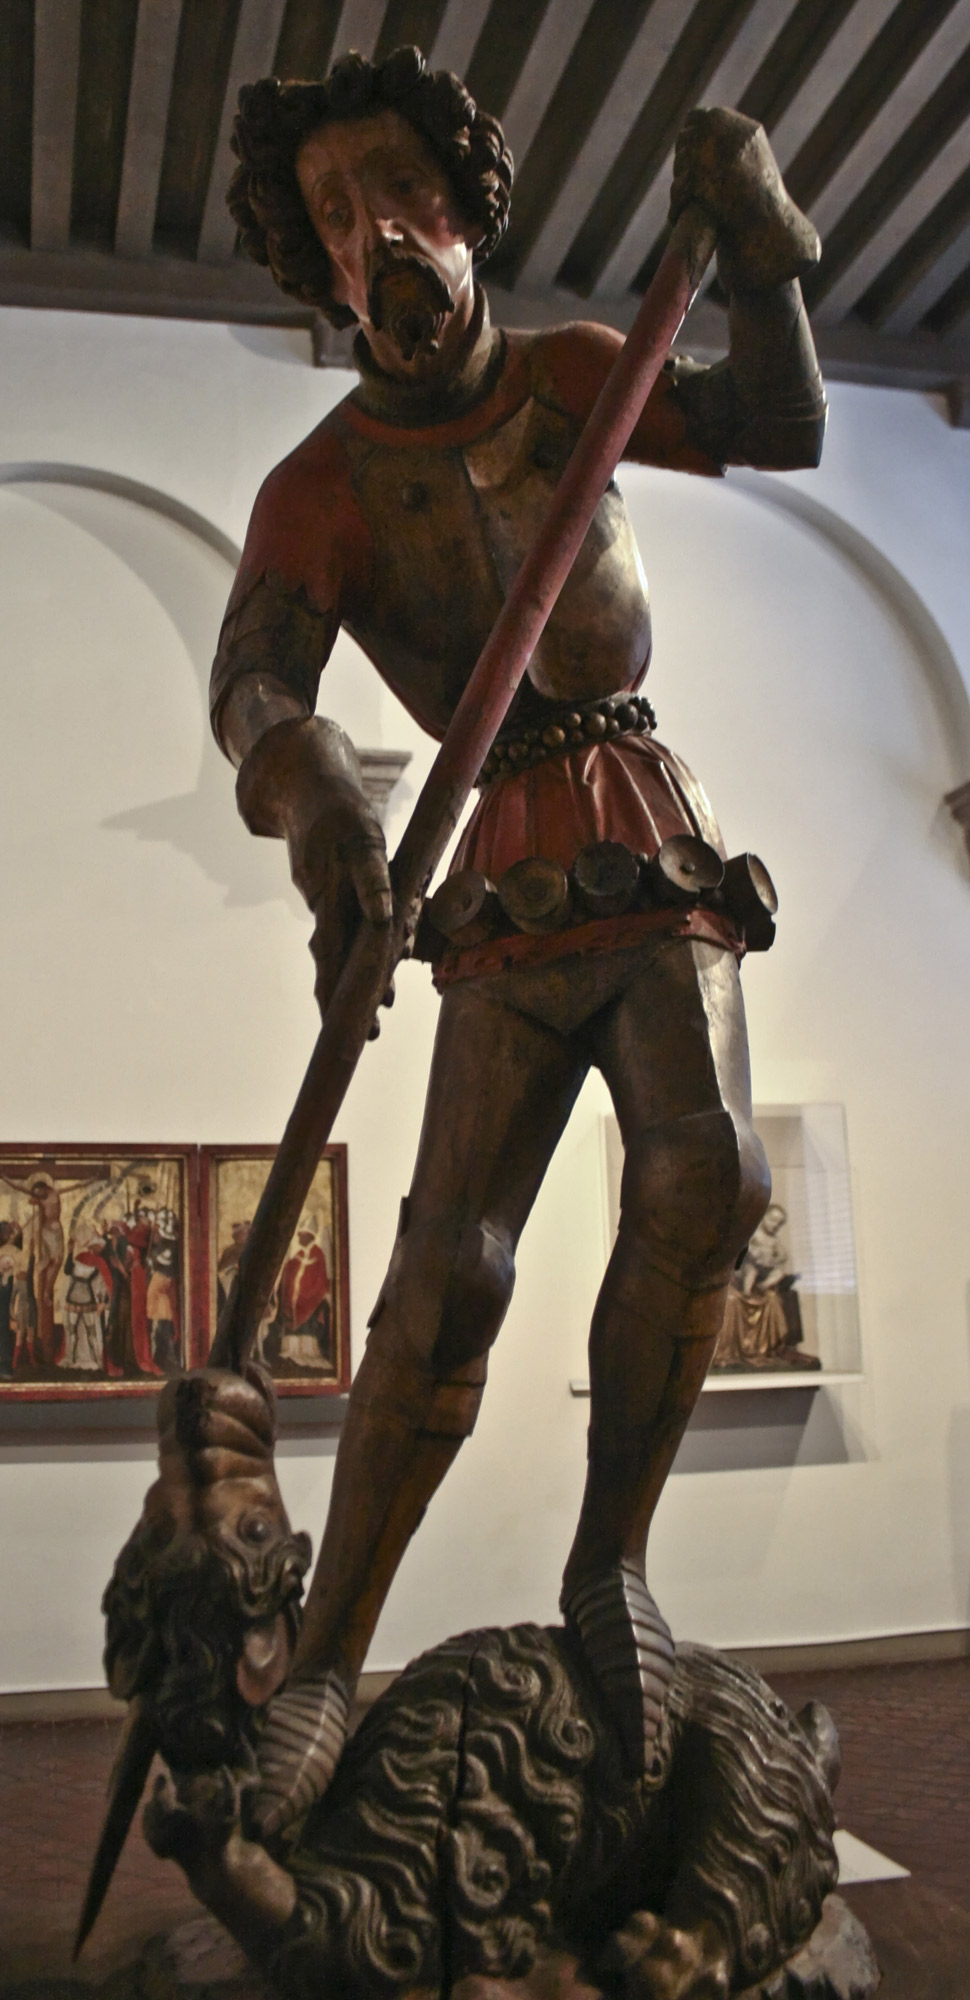 Svatý Jiří, Německo, 1420, zepředu.jpg